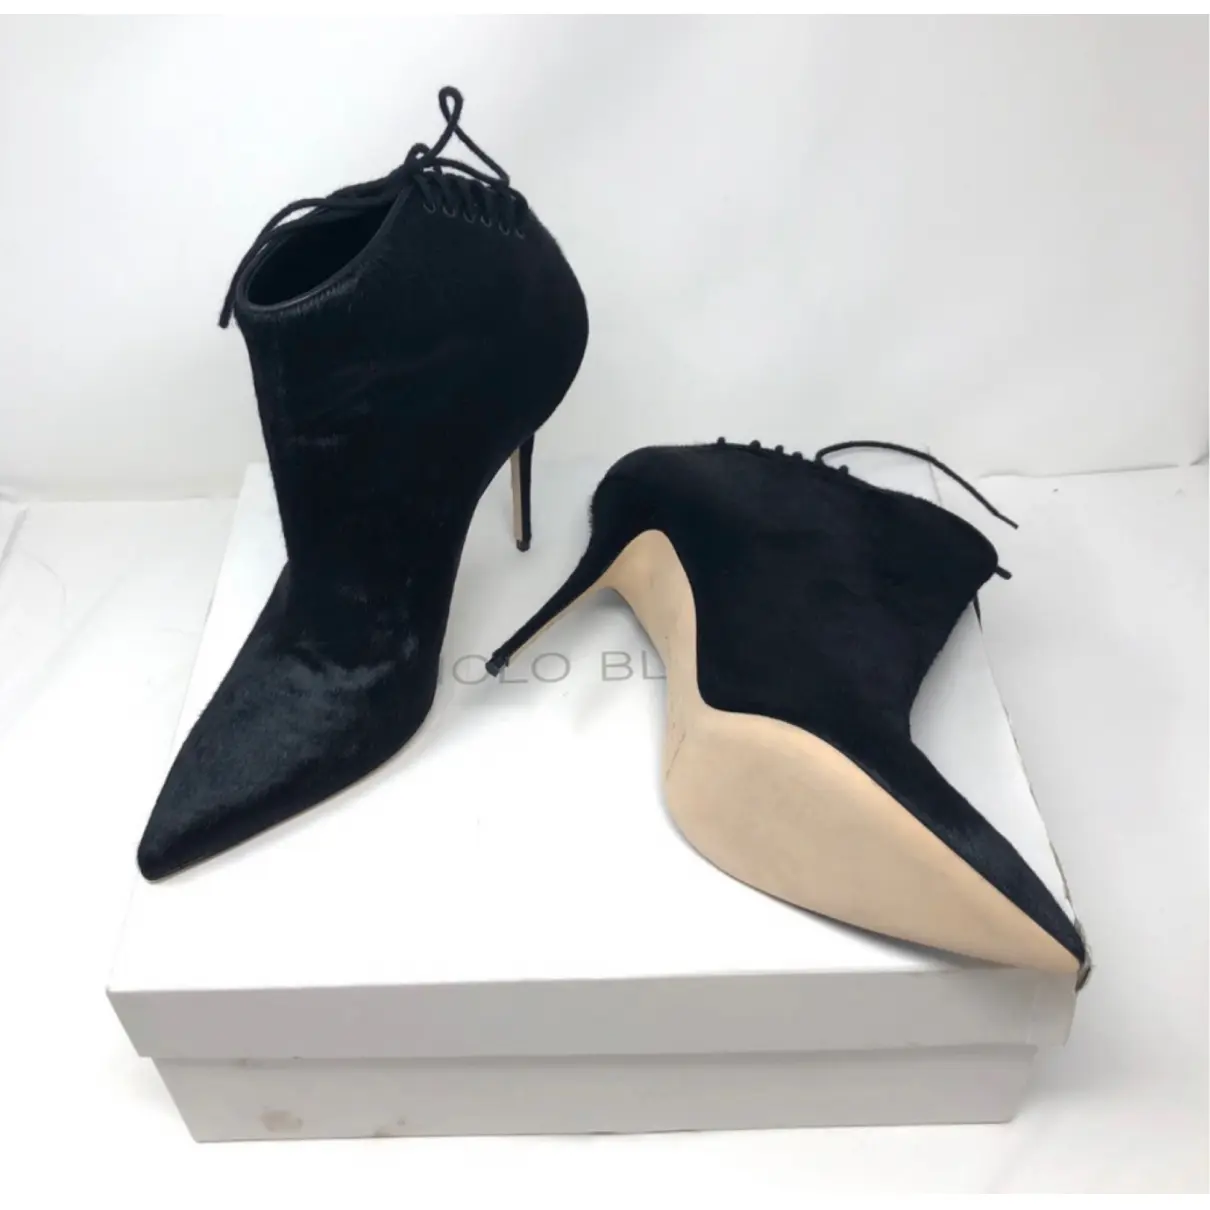 Luxury Manolo Blahnik Ankle boots Women